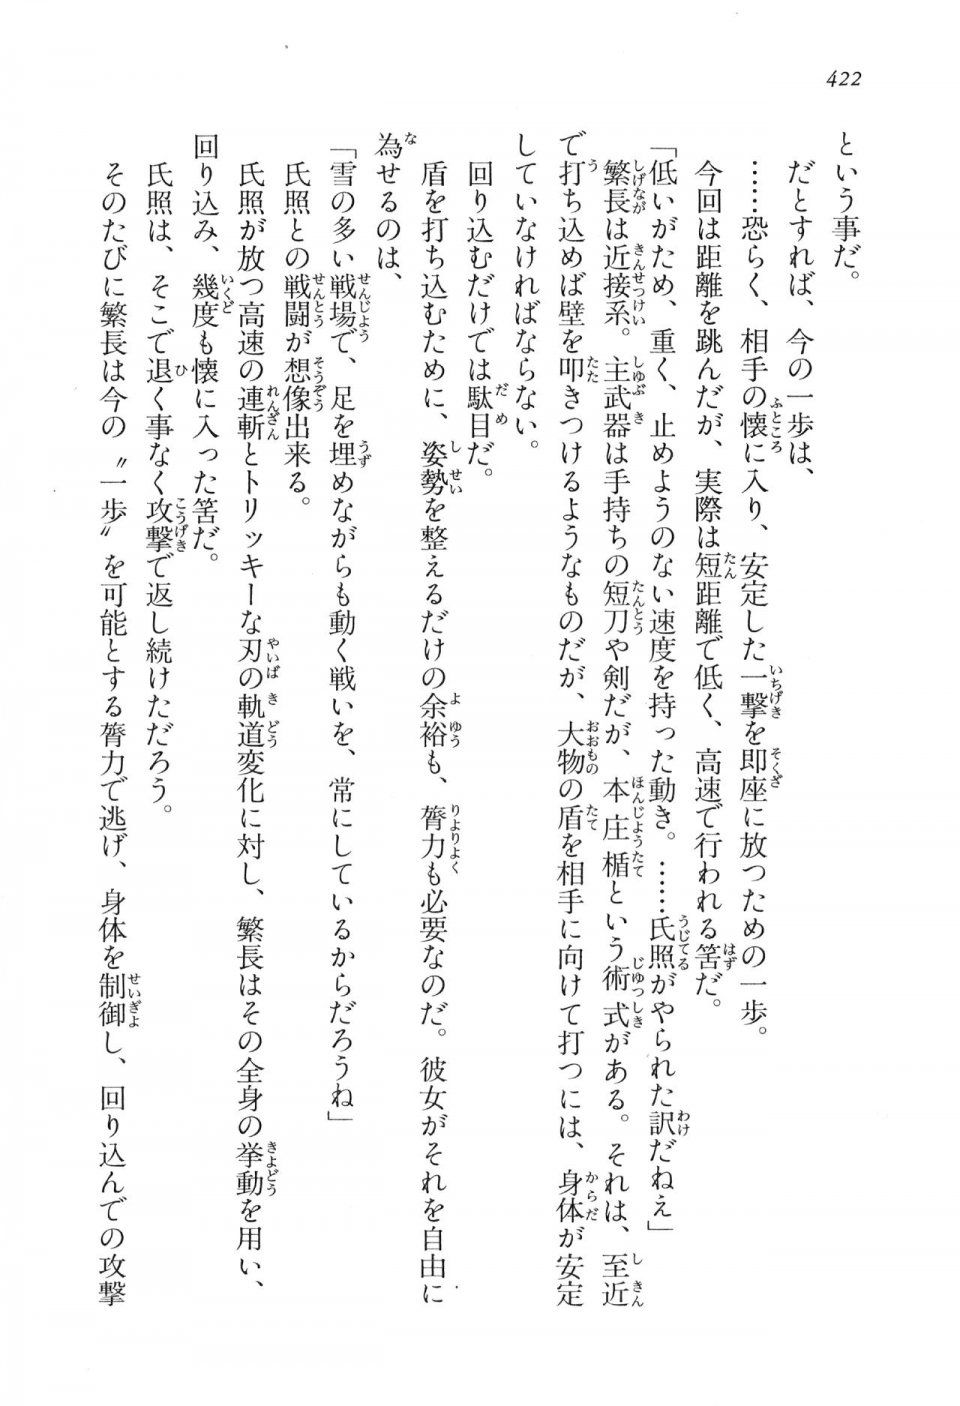 Kyoukai Senjou no Horizon LN Vol 16(7A) - Photo #422